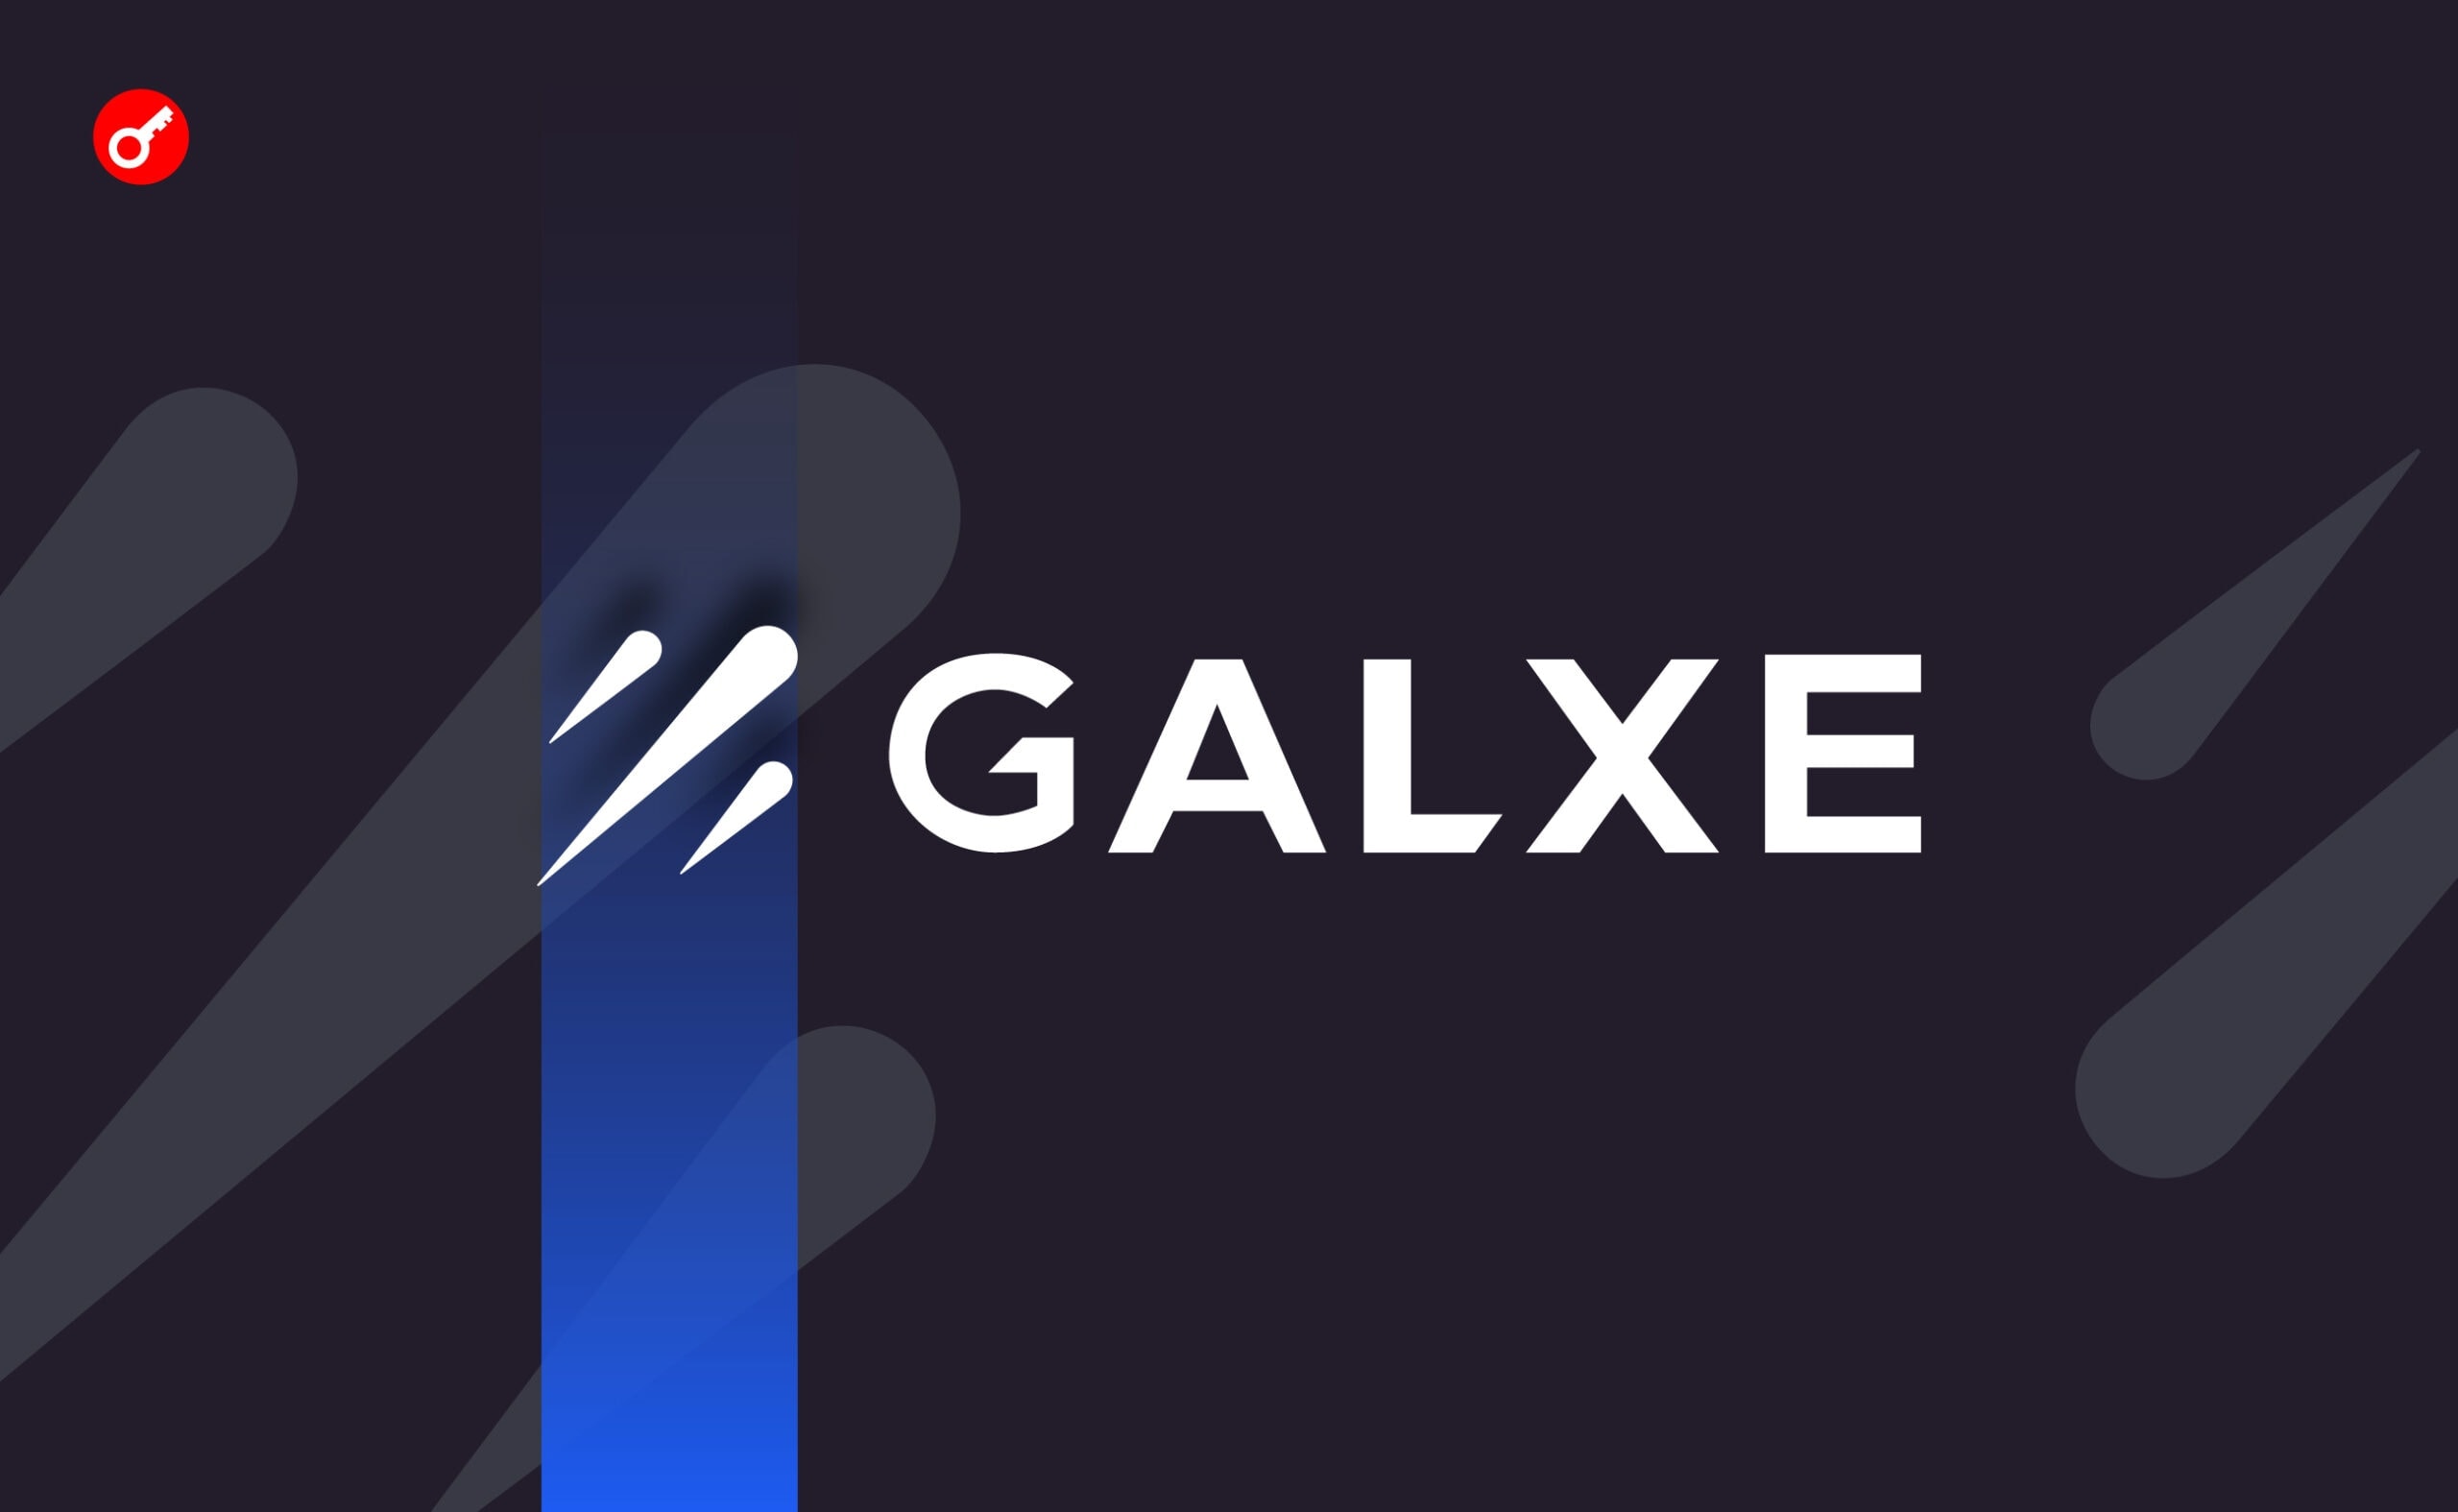 Galxe представила версію платформи 2.0. Головний колаж новини.